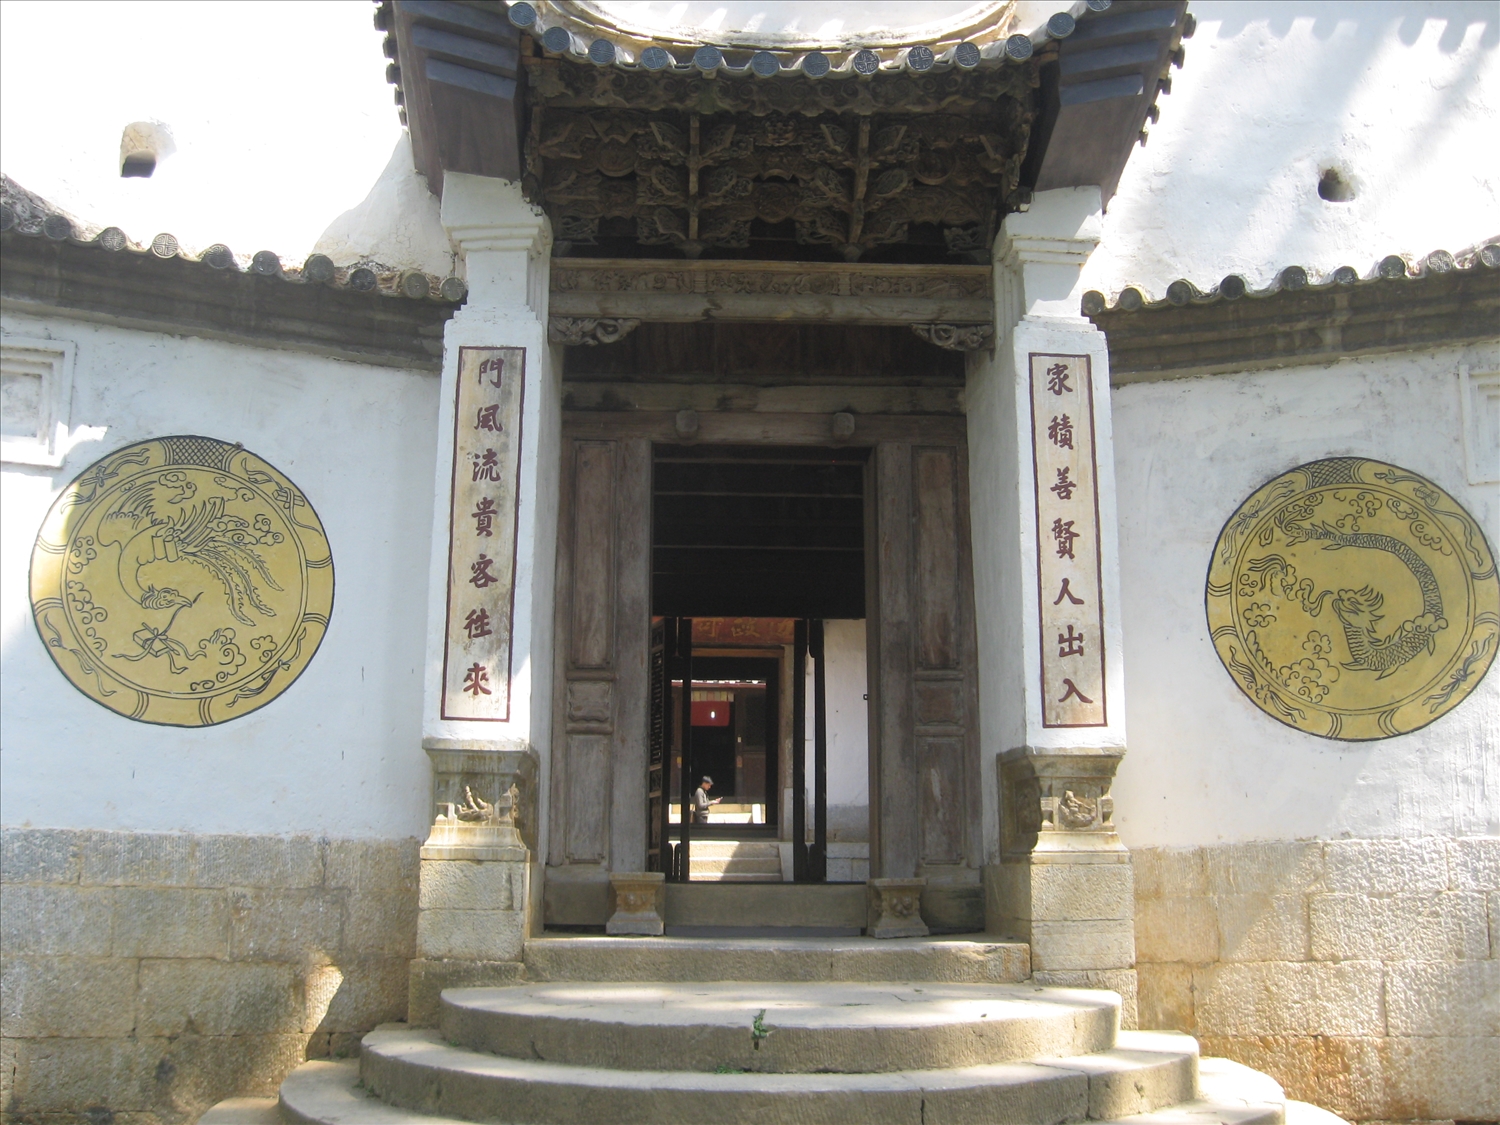 Khu di tích Nhà Vương - điểm du lịch và là di tích lịch sử của Hà Giang trên Cao nguyên đá Đồng Văn.